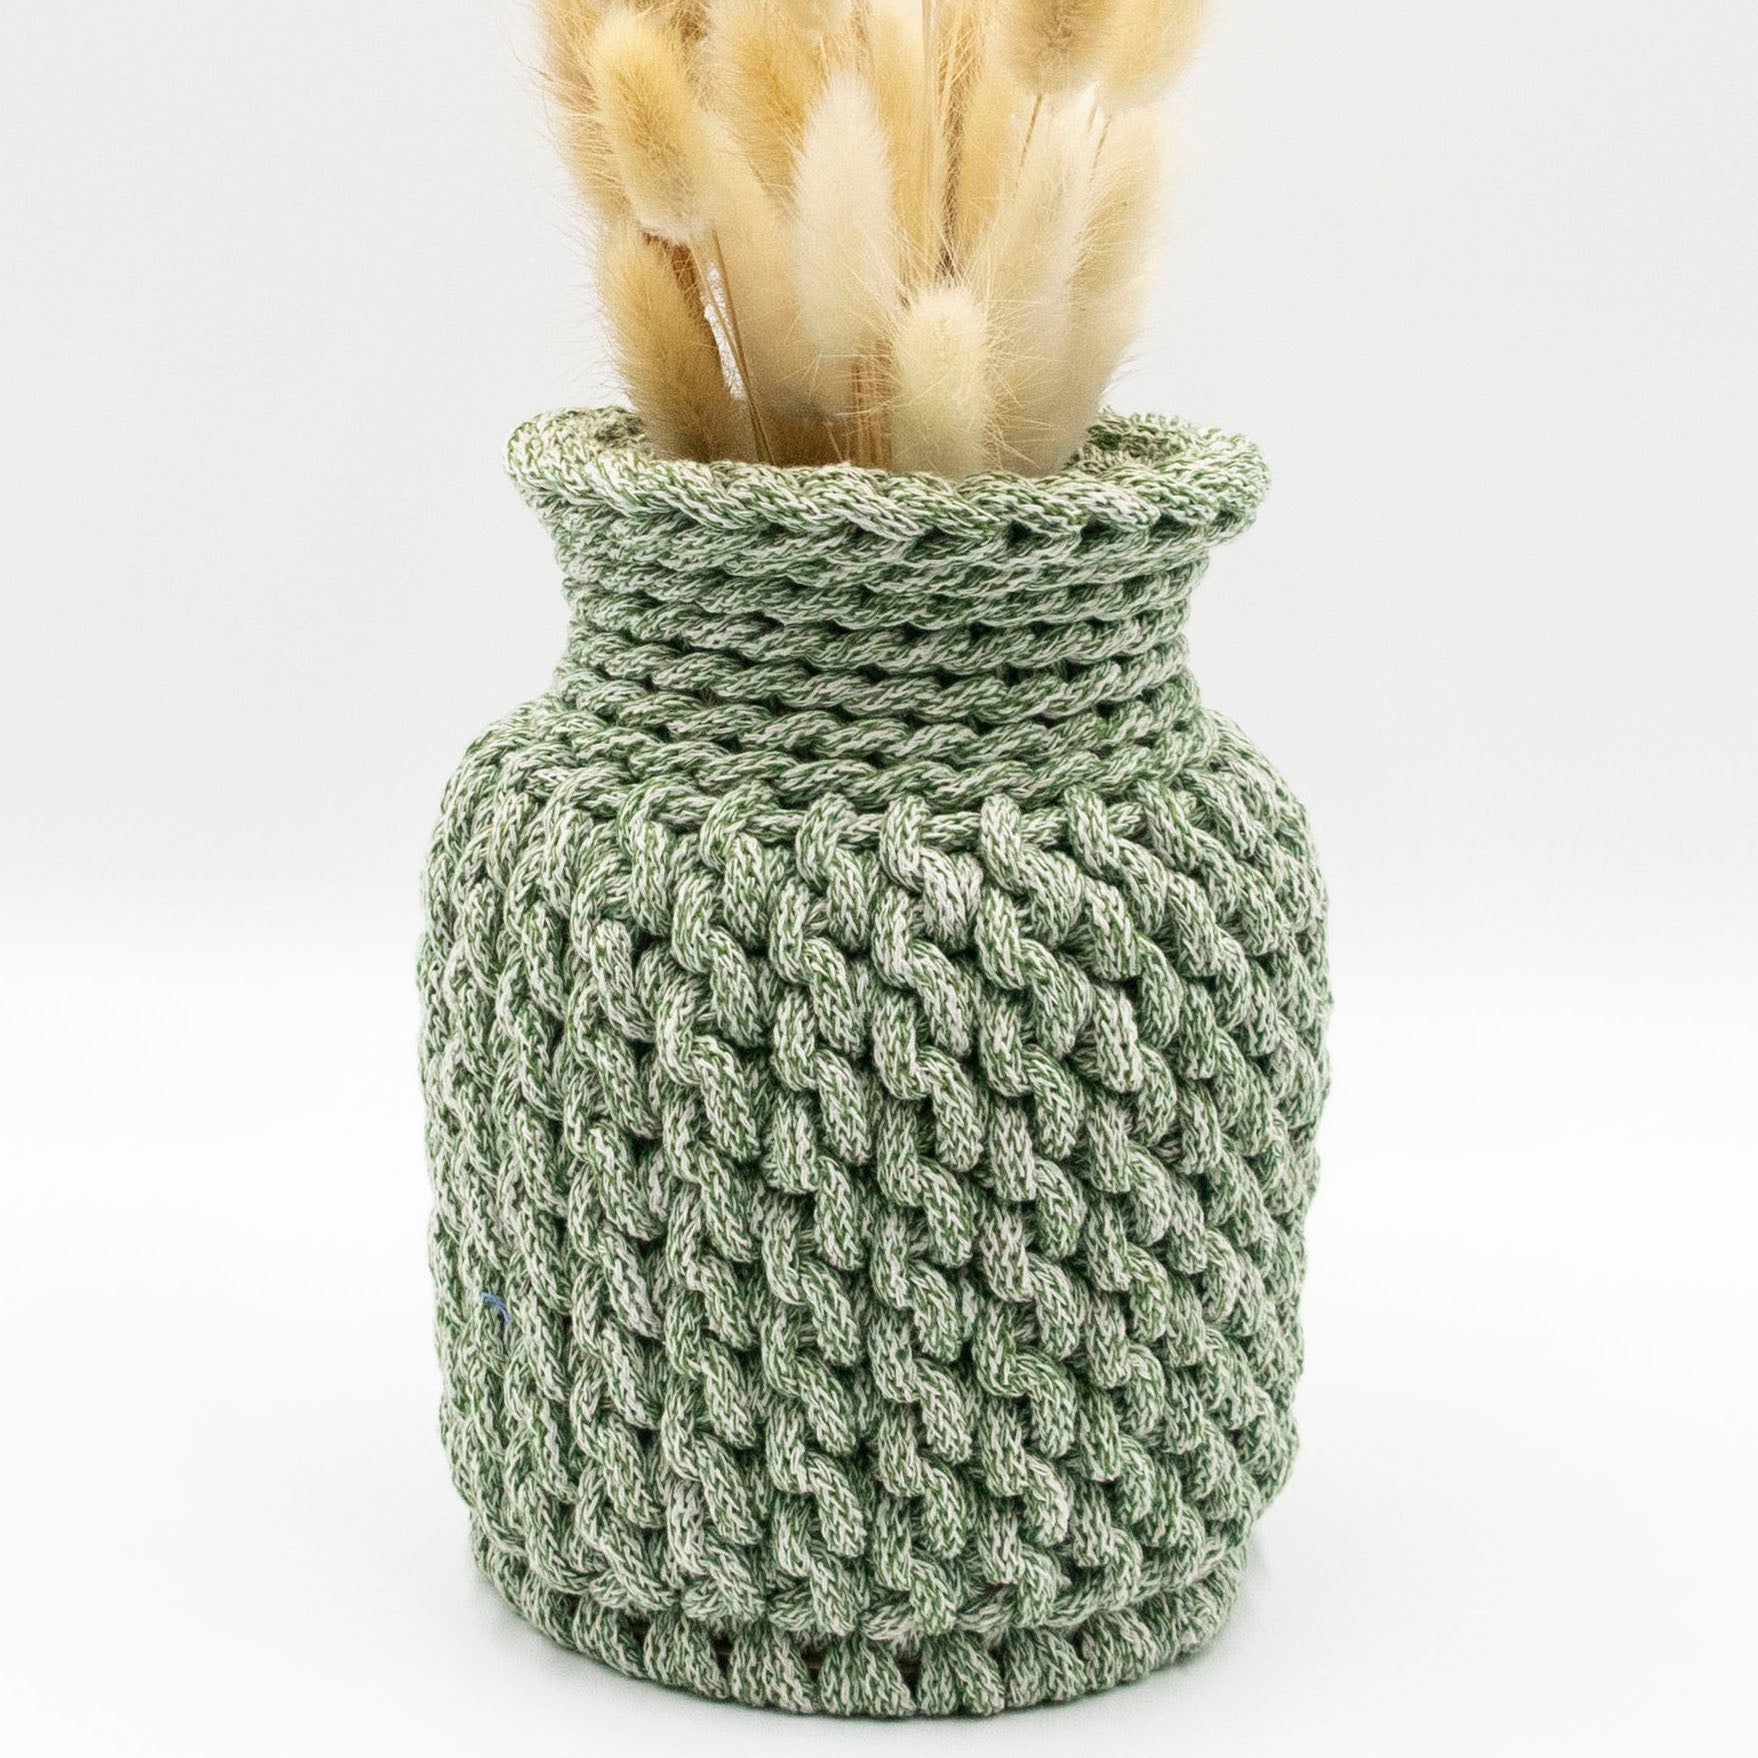 Crochet Video Tutorial - Vase